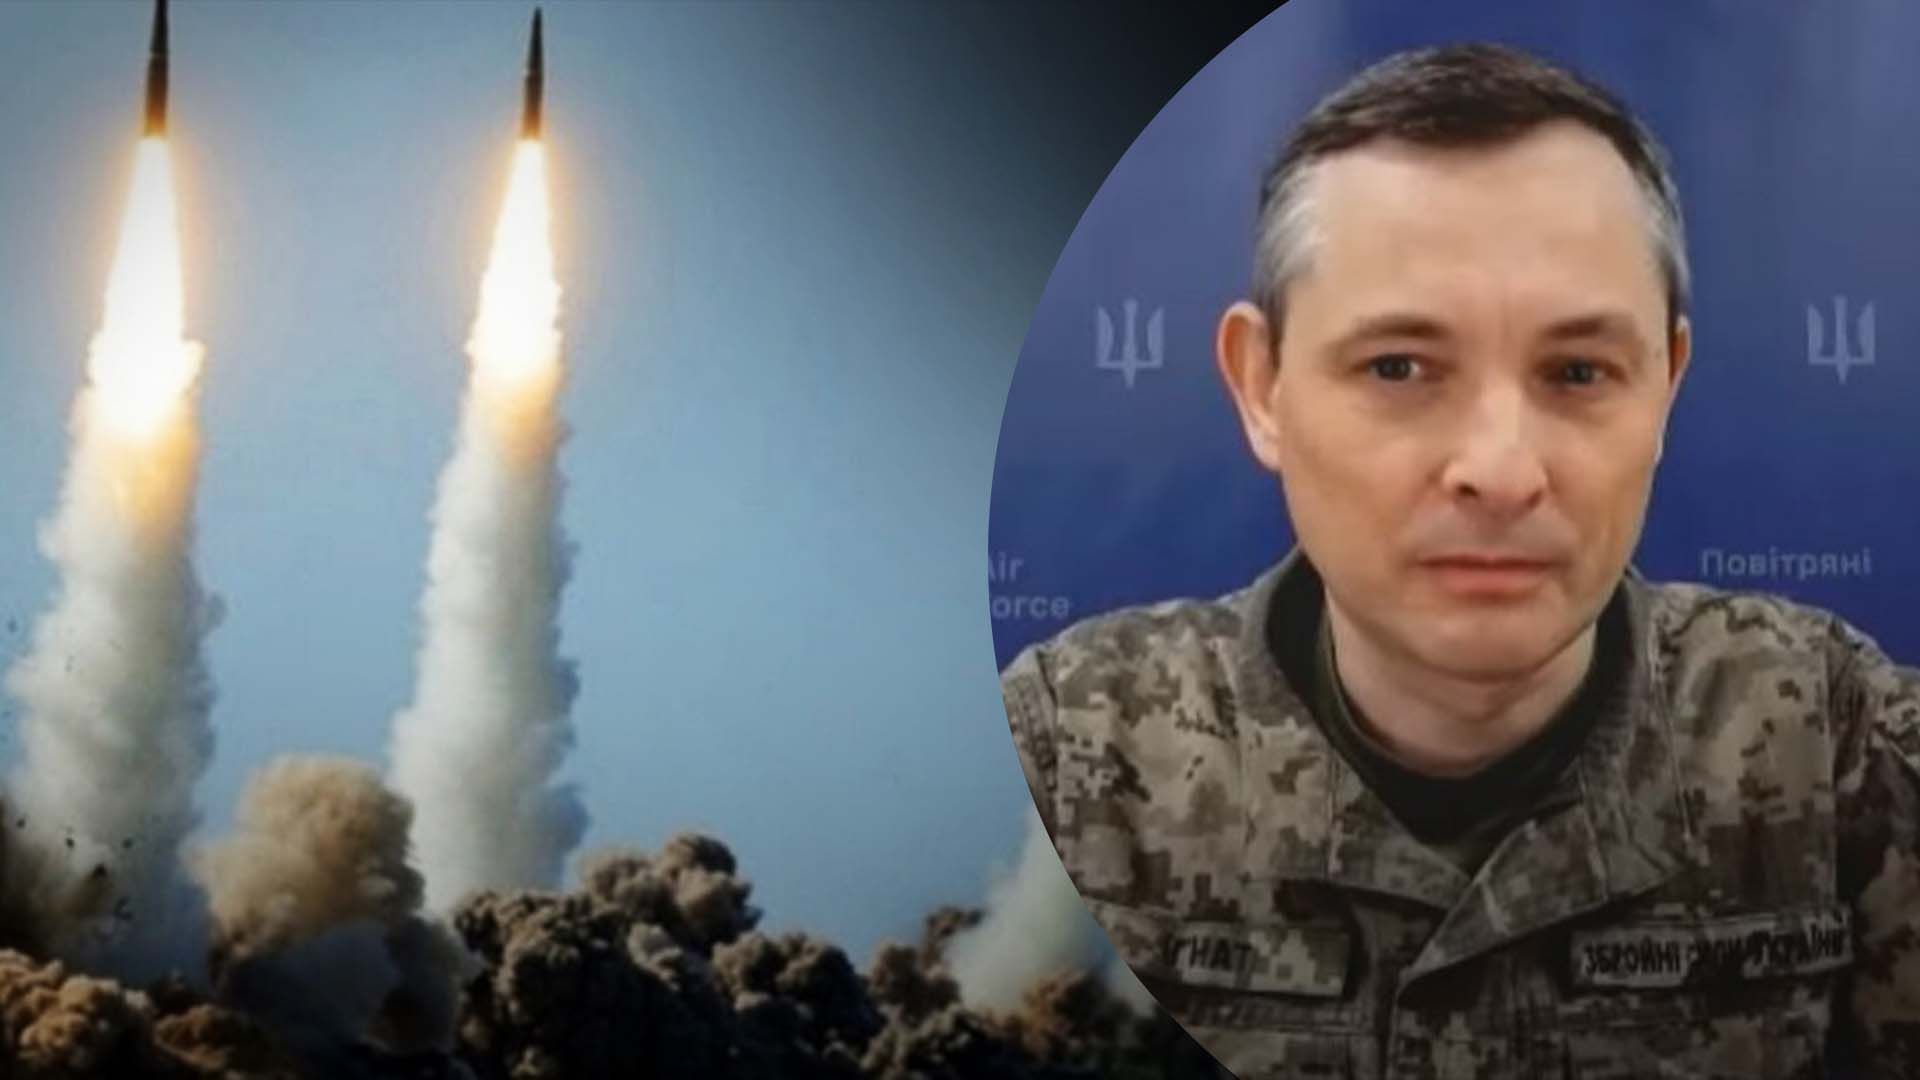 Повітряні сили попереджали про загрозу із Новоросійська